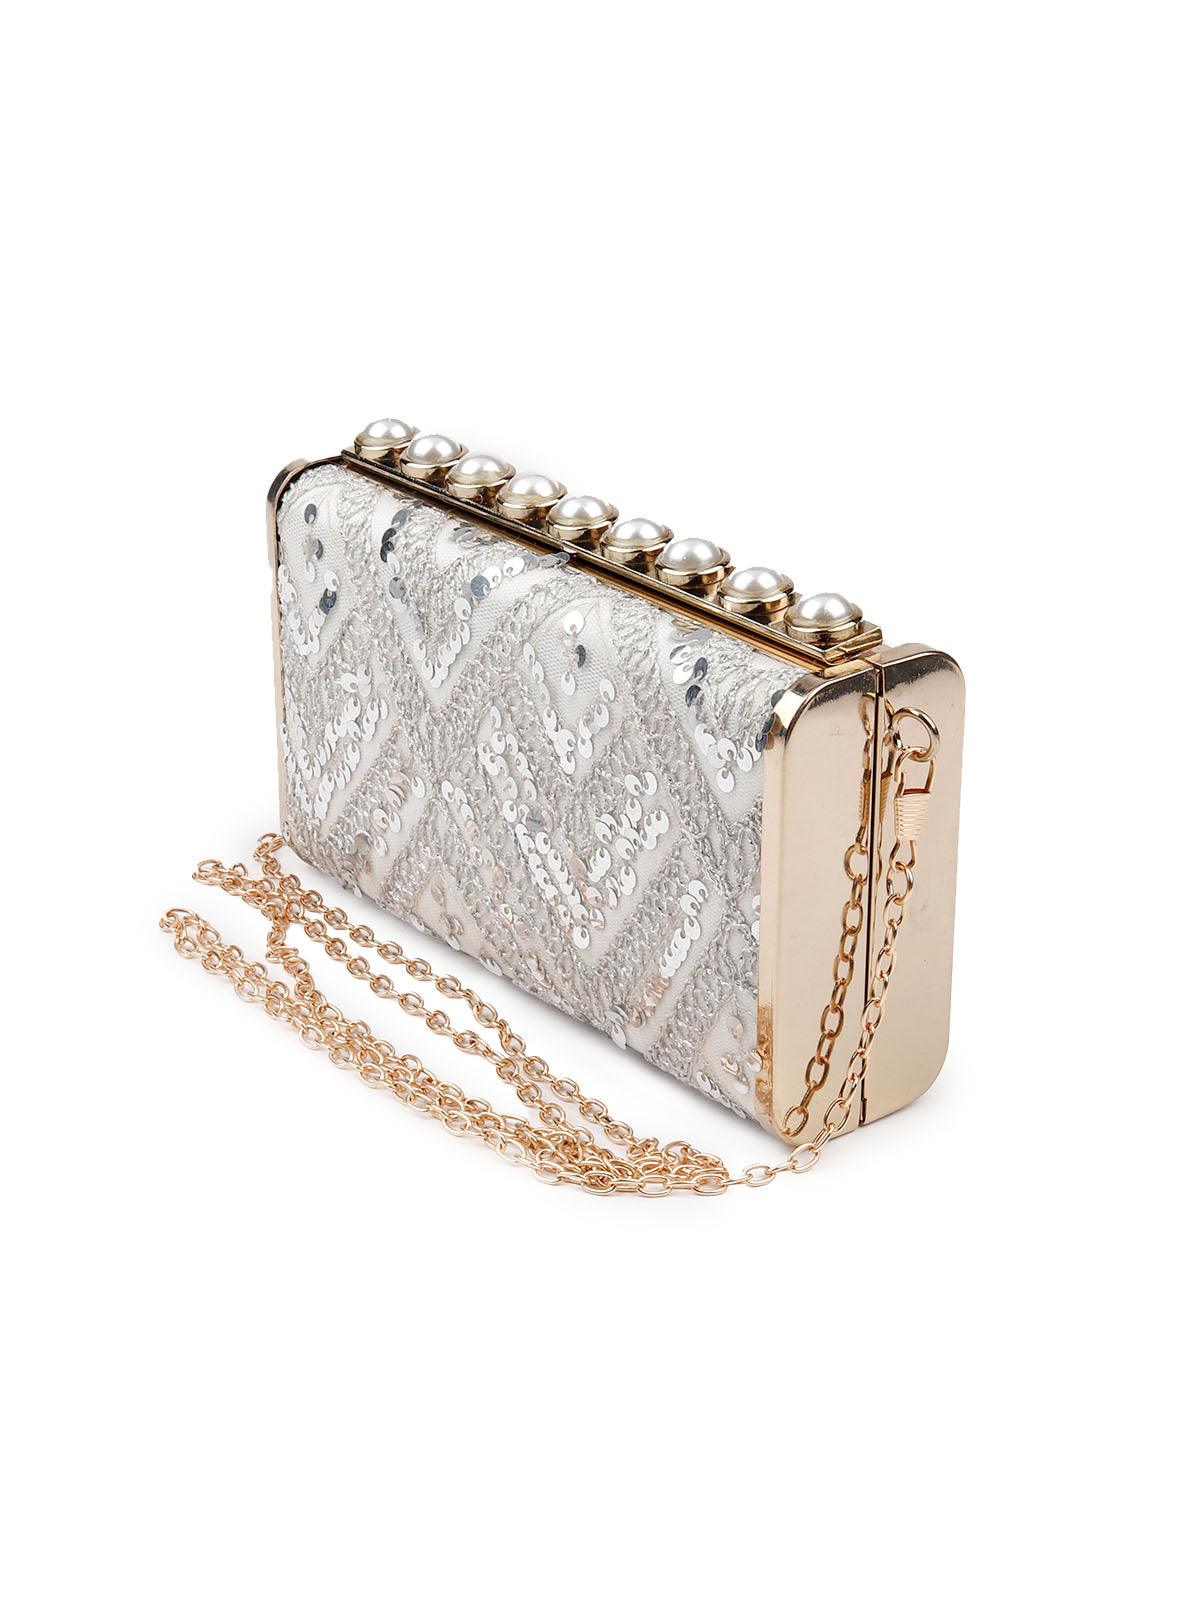 Stunning silver embellished statement sling bag - Odette